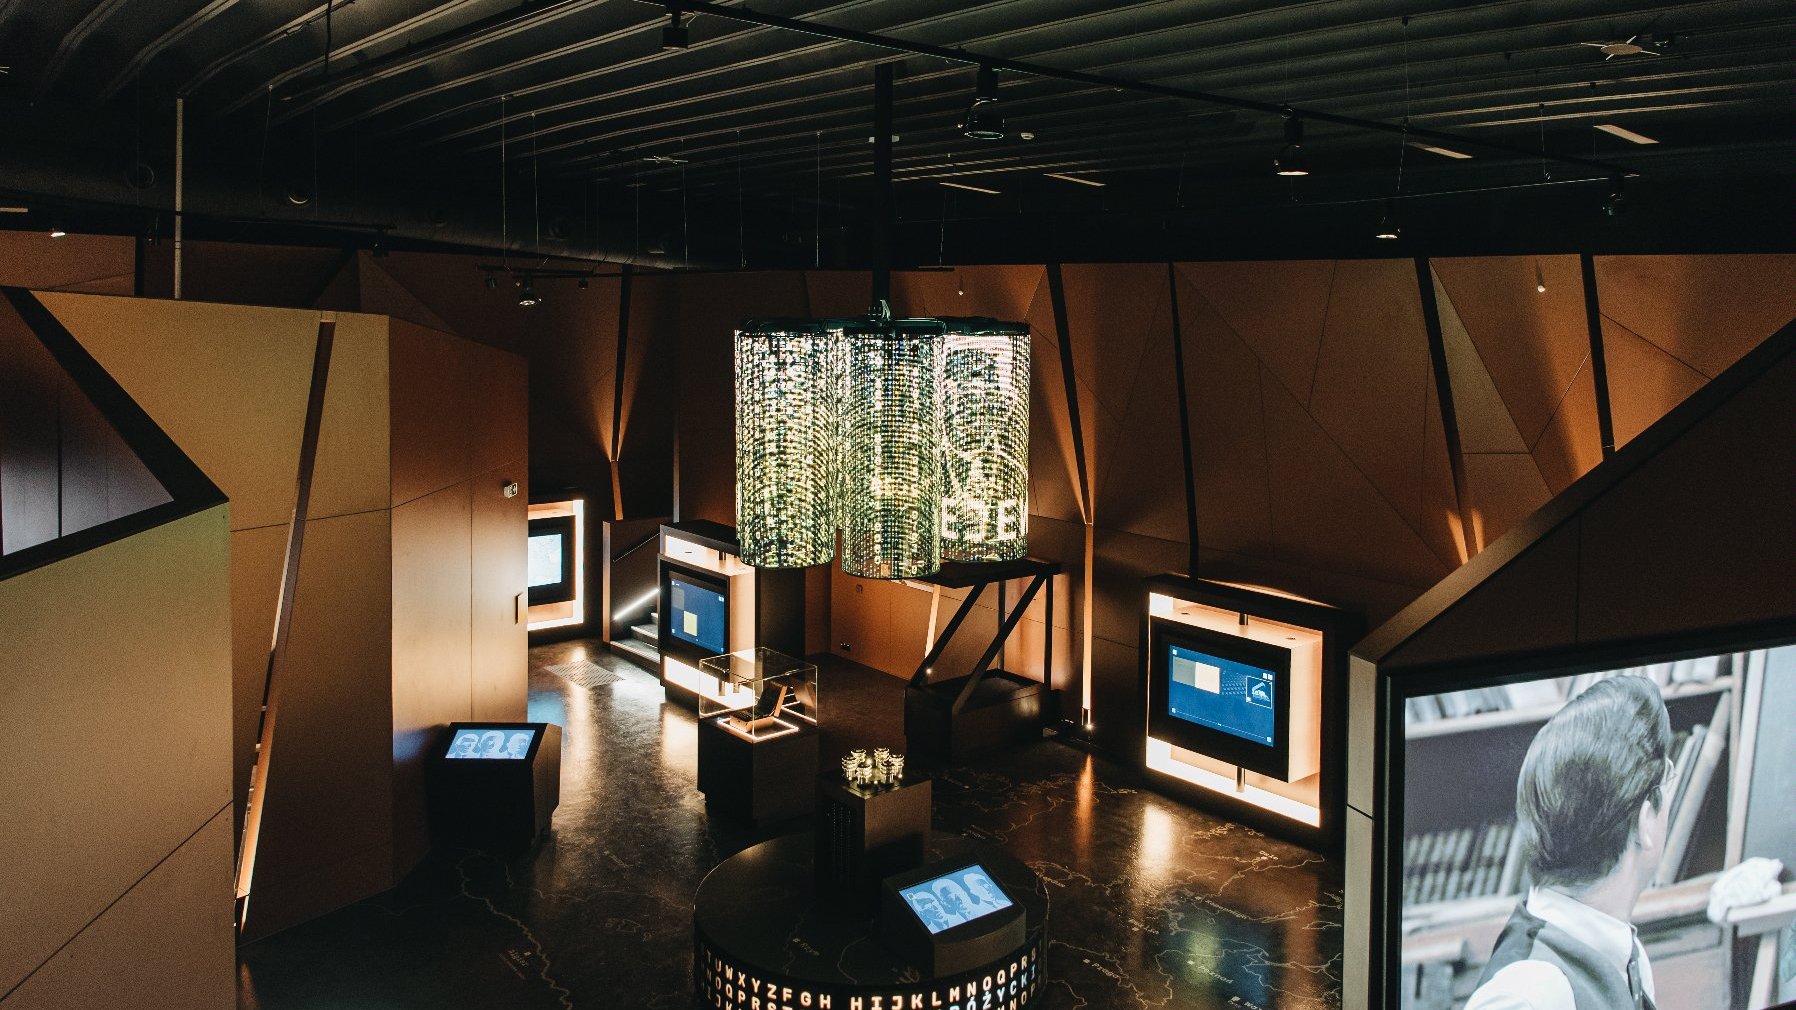 Na zdjeciu wnętrze Centrum Szyfrów Enigma, widać ekrany i wielką lampę